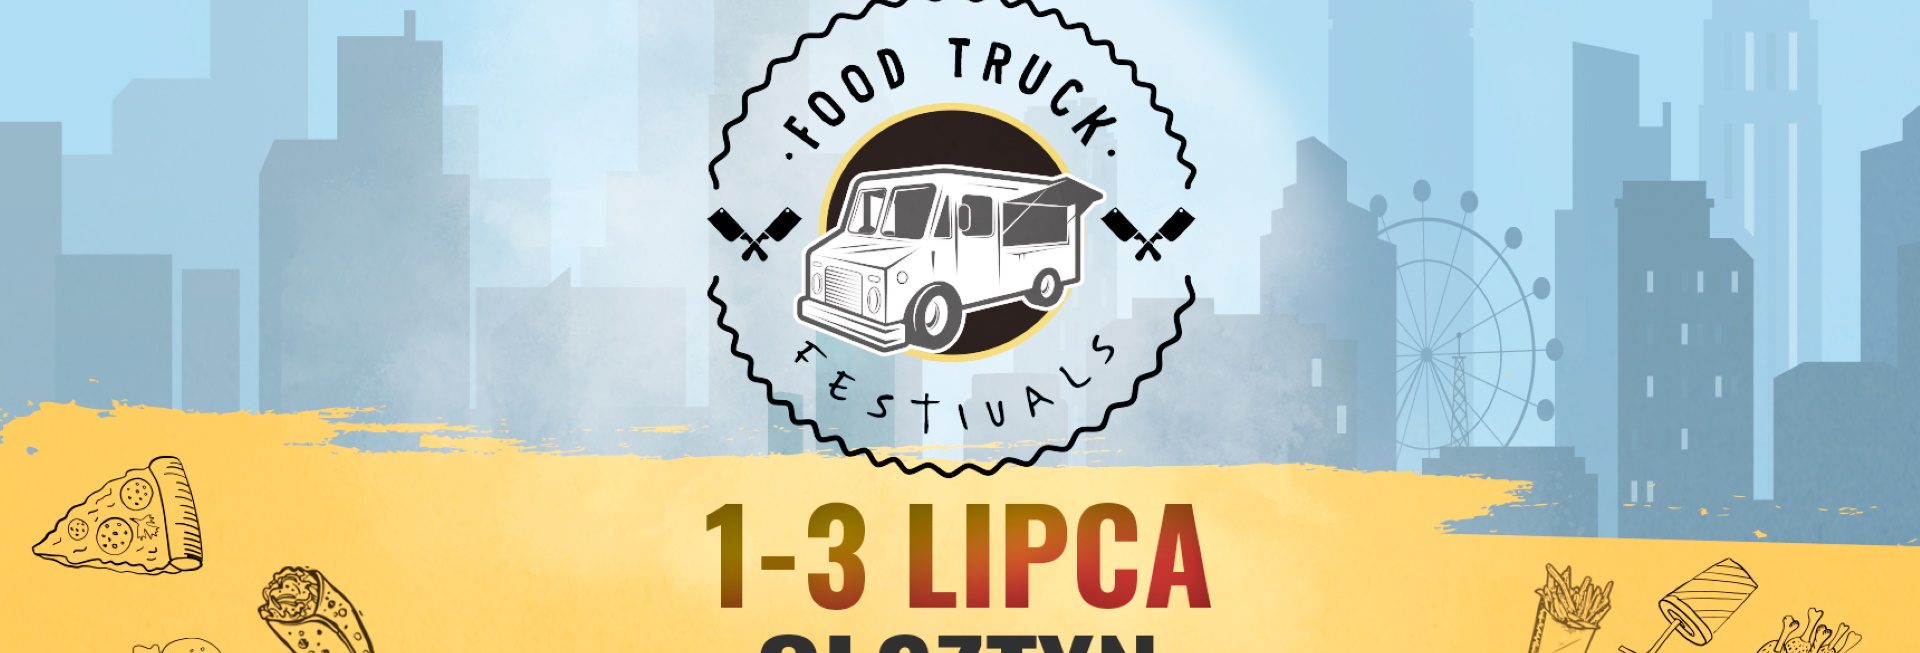 Plakat graficzny zapraszający do Olsztyna na 1. edycję Food Truck Festivals - Moc smaków w jednym miejscu Olsztyn 2022.